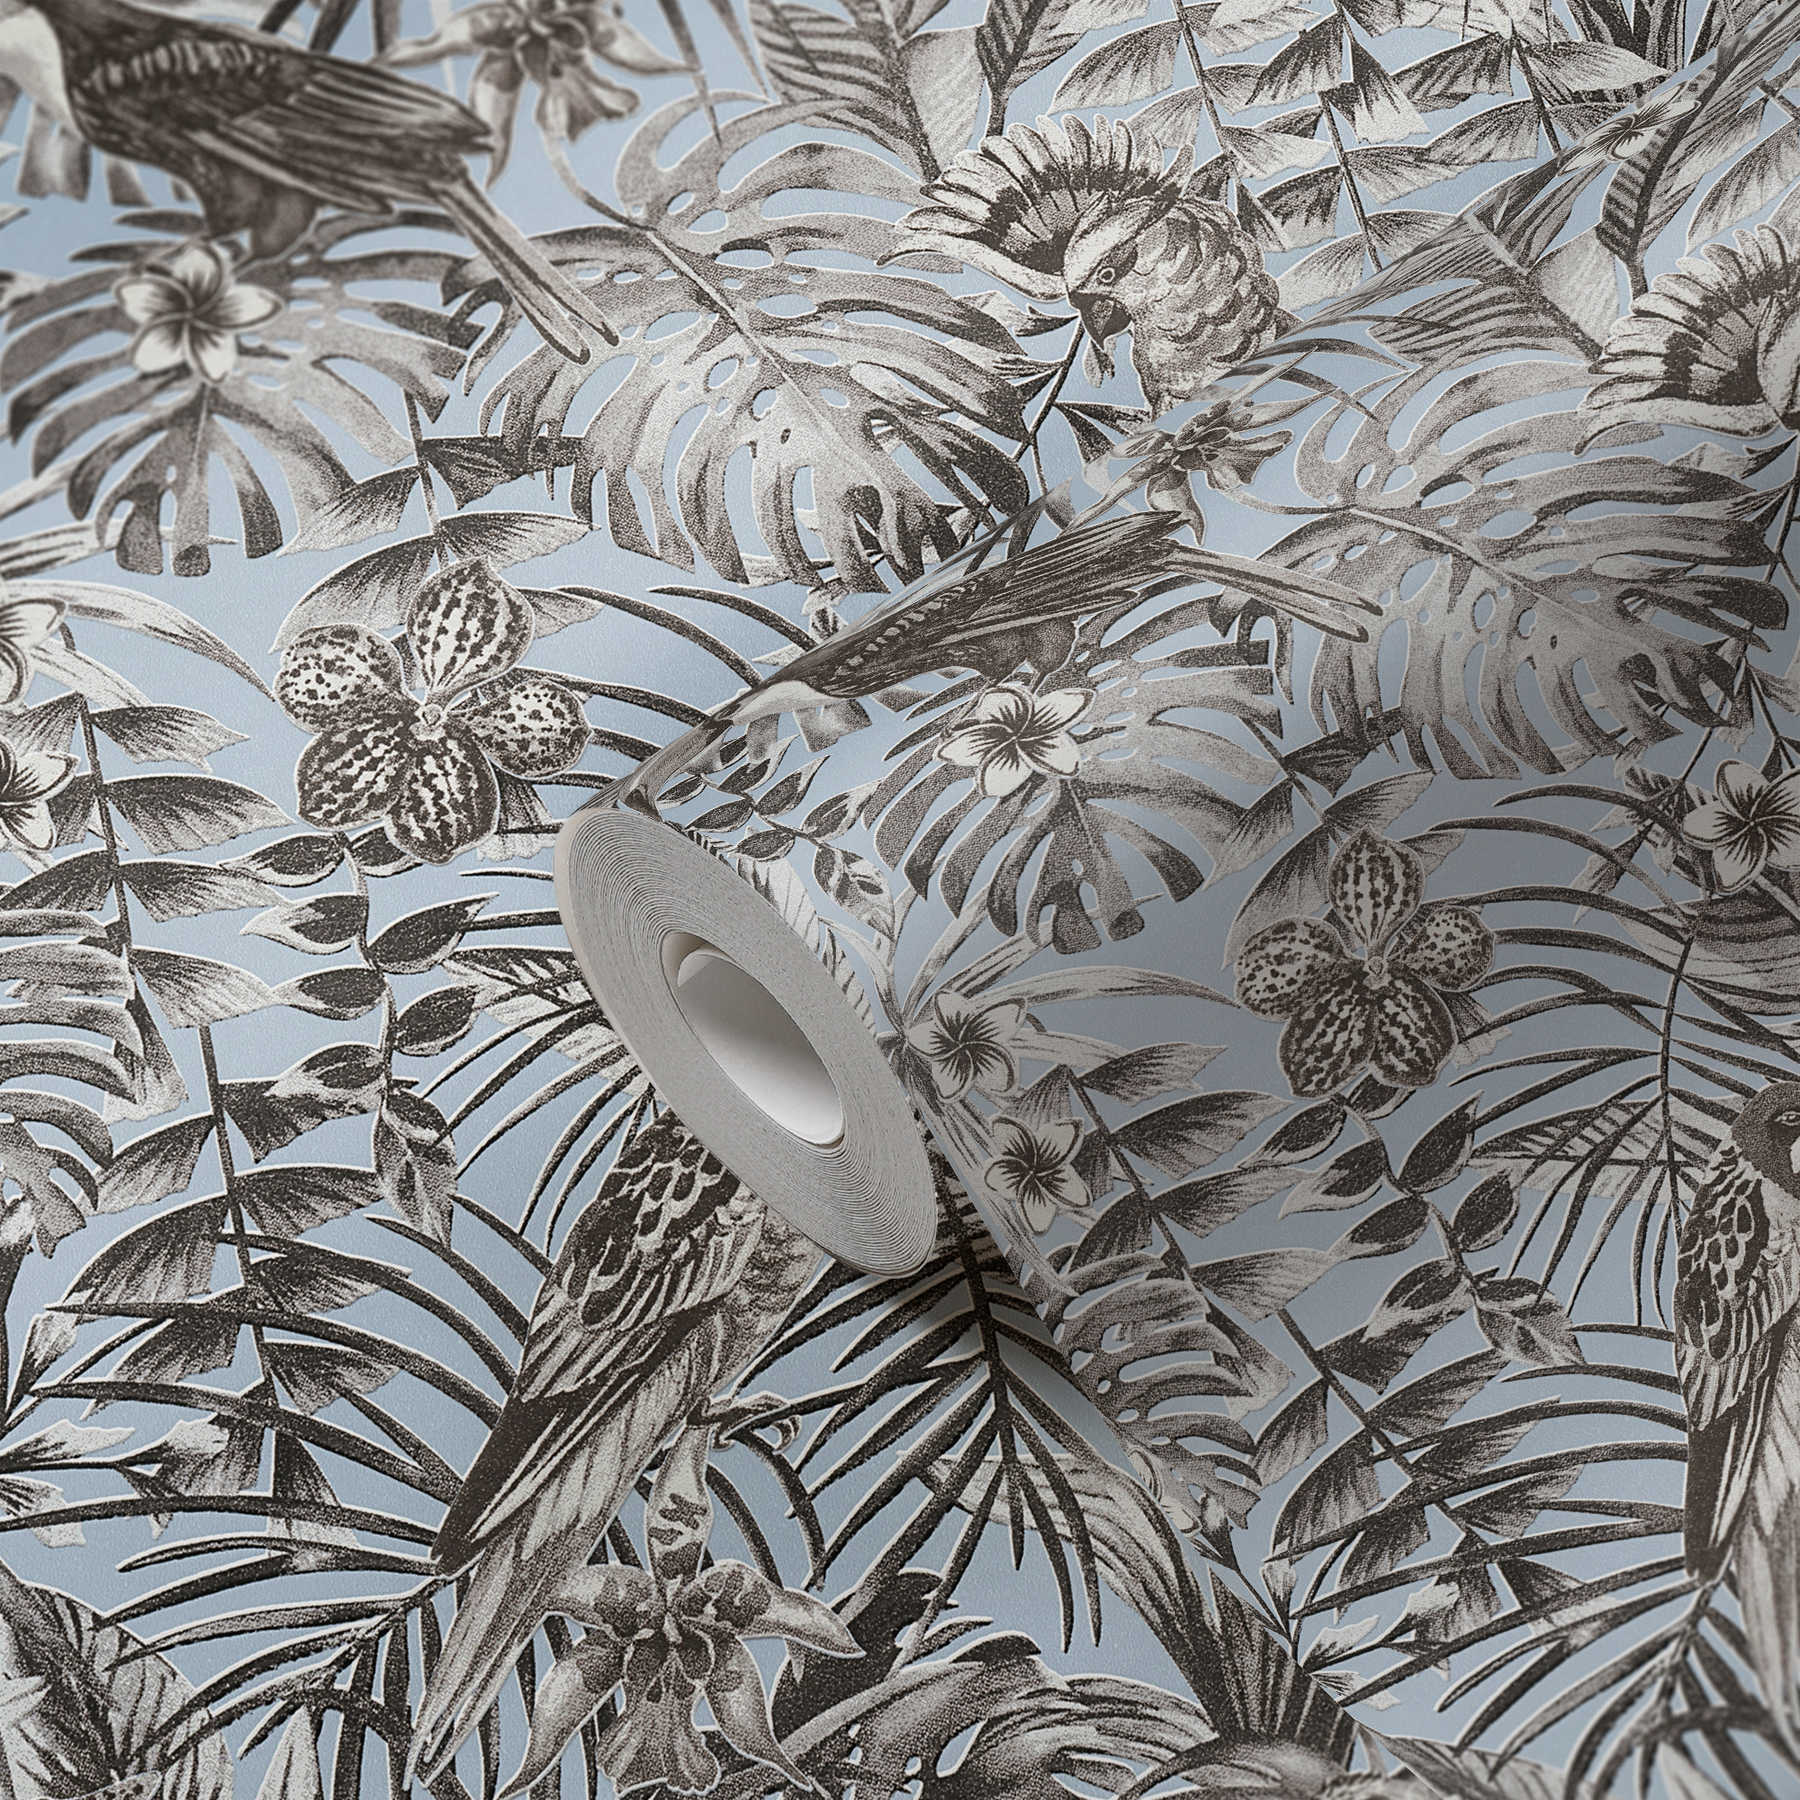             Papel pintado exótico pájaros, flores y hojas tropicales - gris, azul, blanco
        